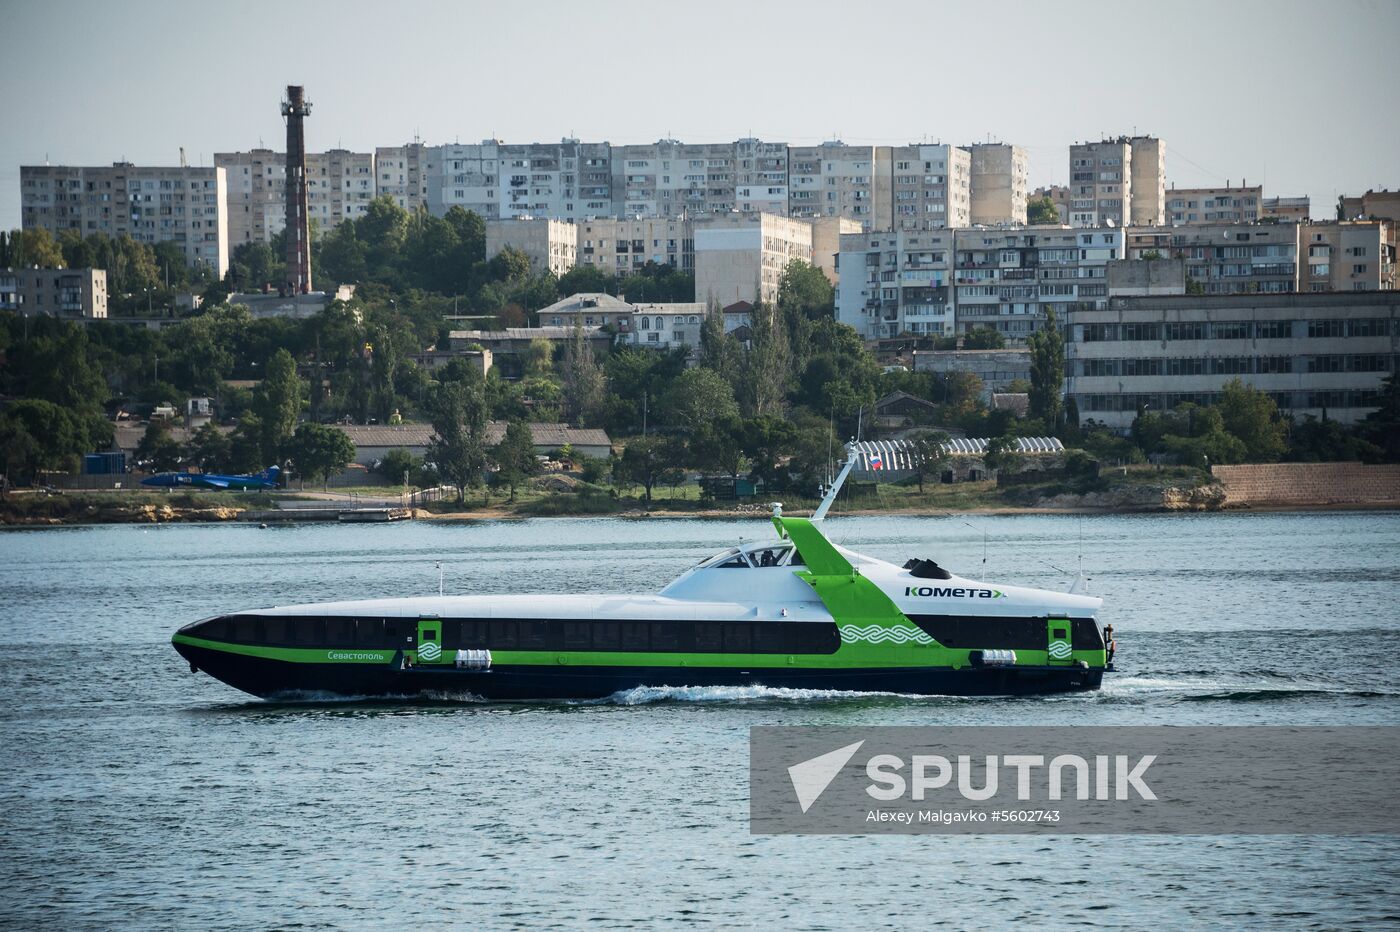 Kometa 120M high-speed boat performs maiden voyage